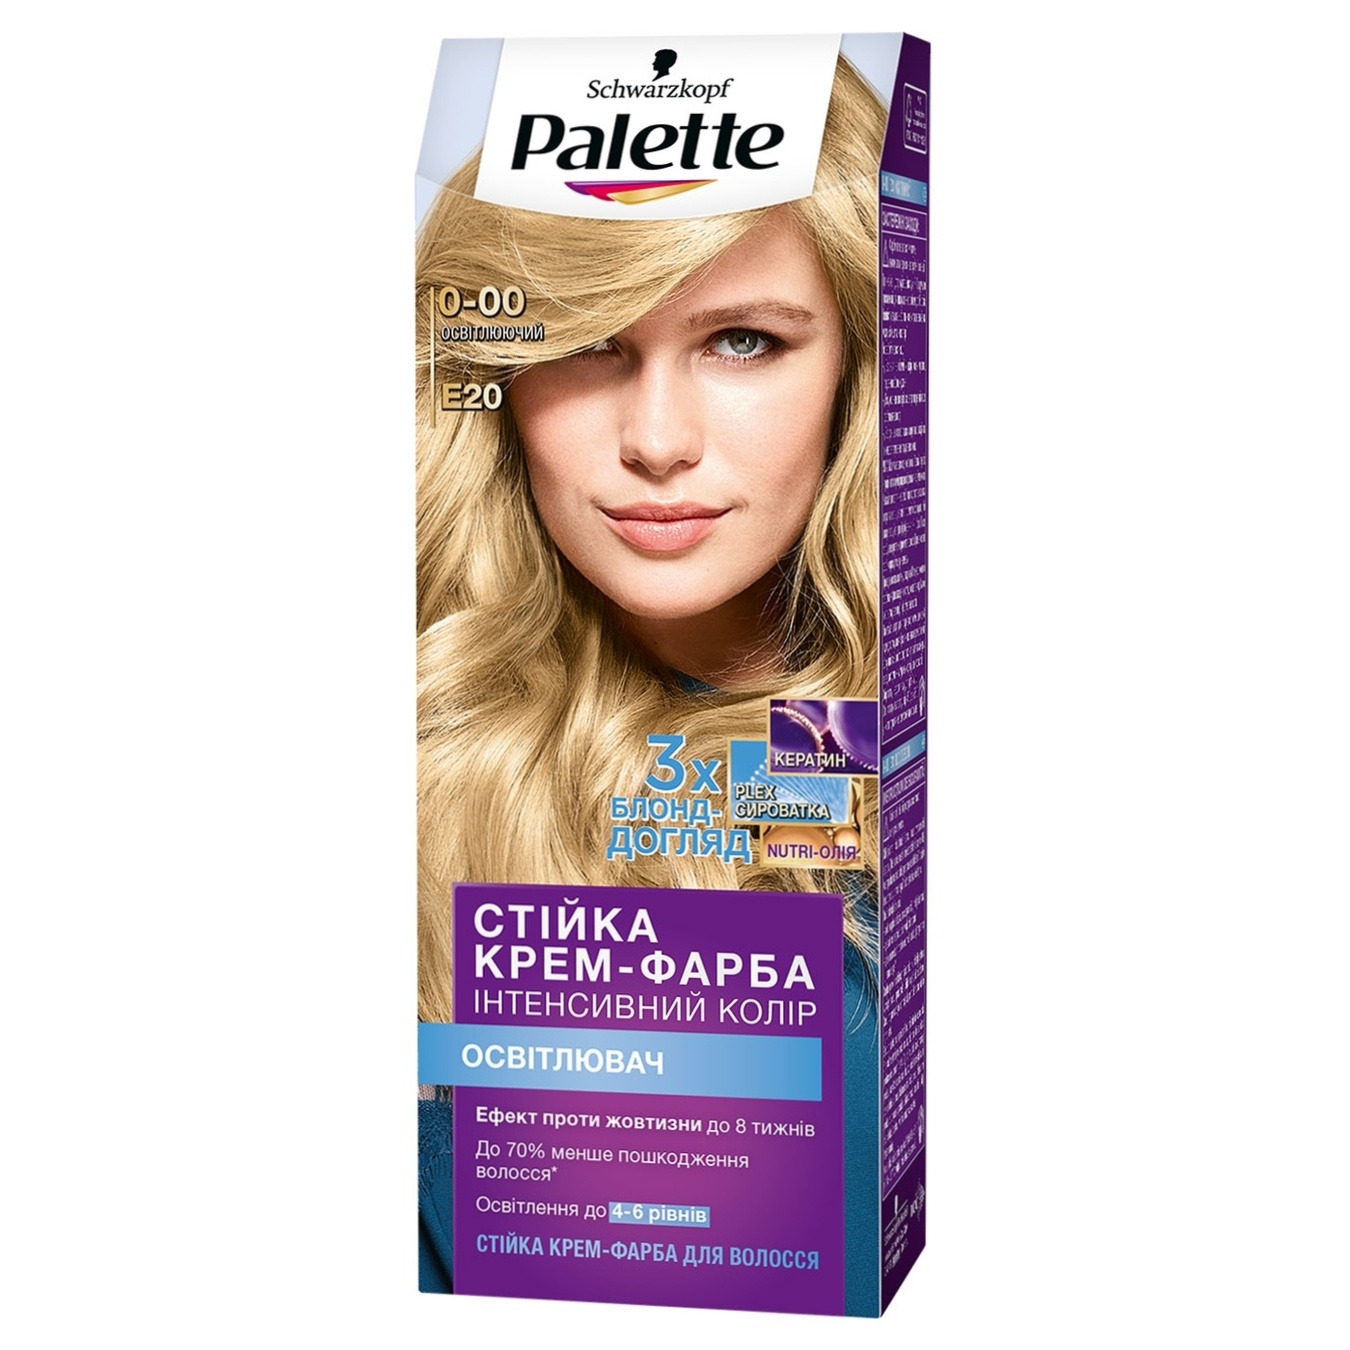 Palette E20 lightening hair dye